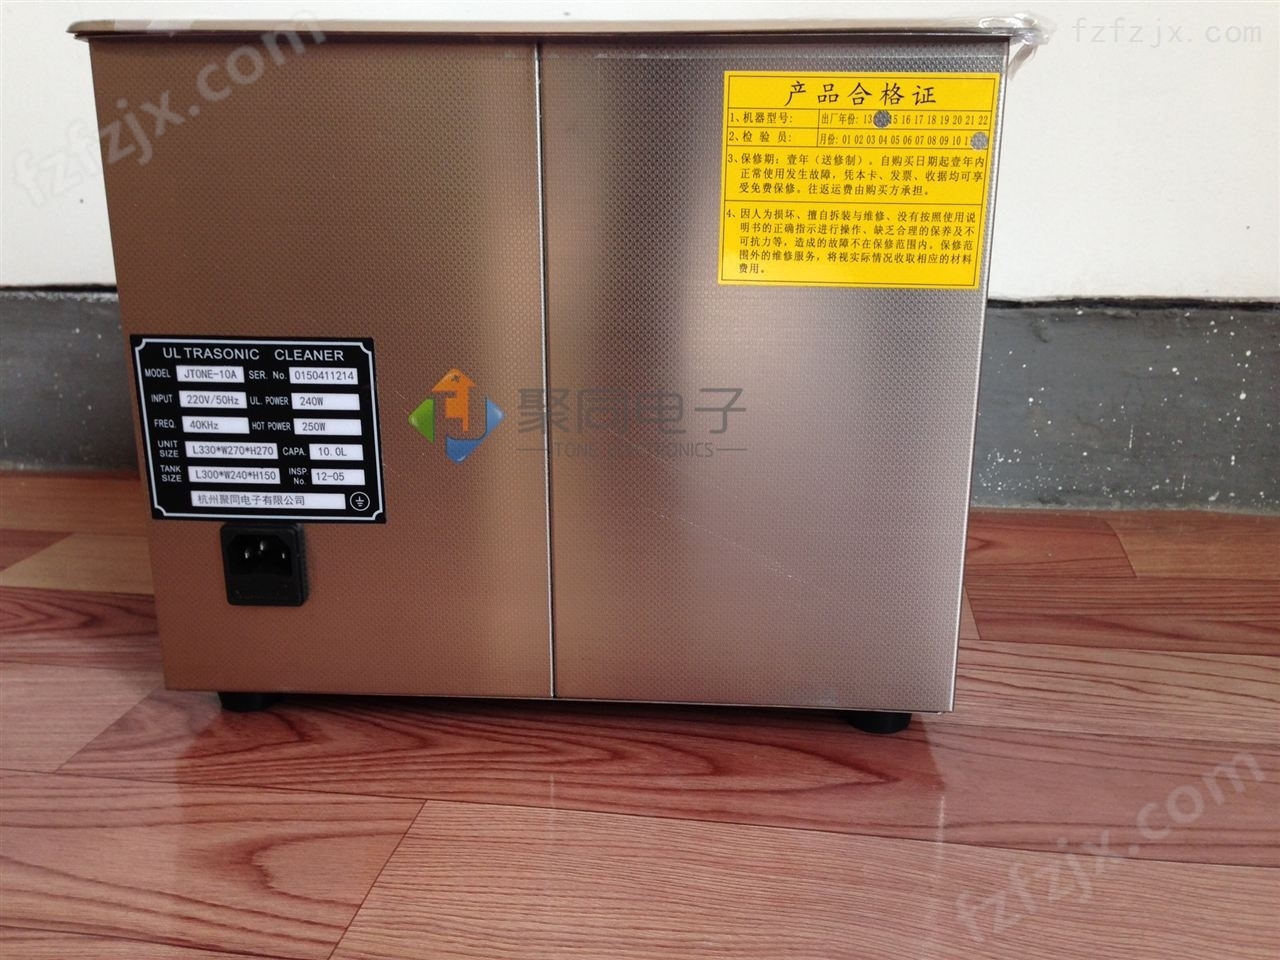 上海超声波清洗机JTONE-3B产品规格